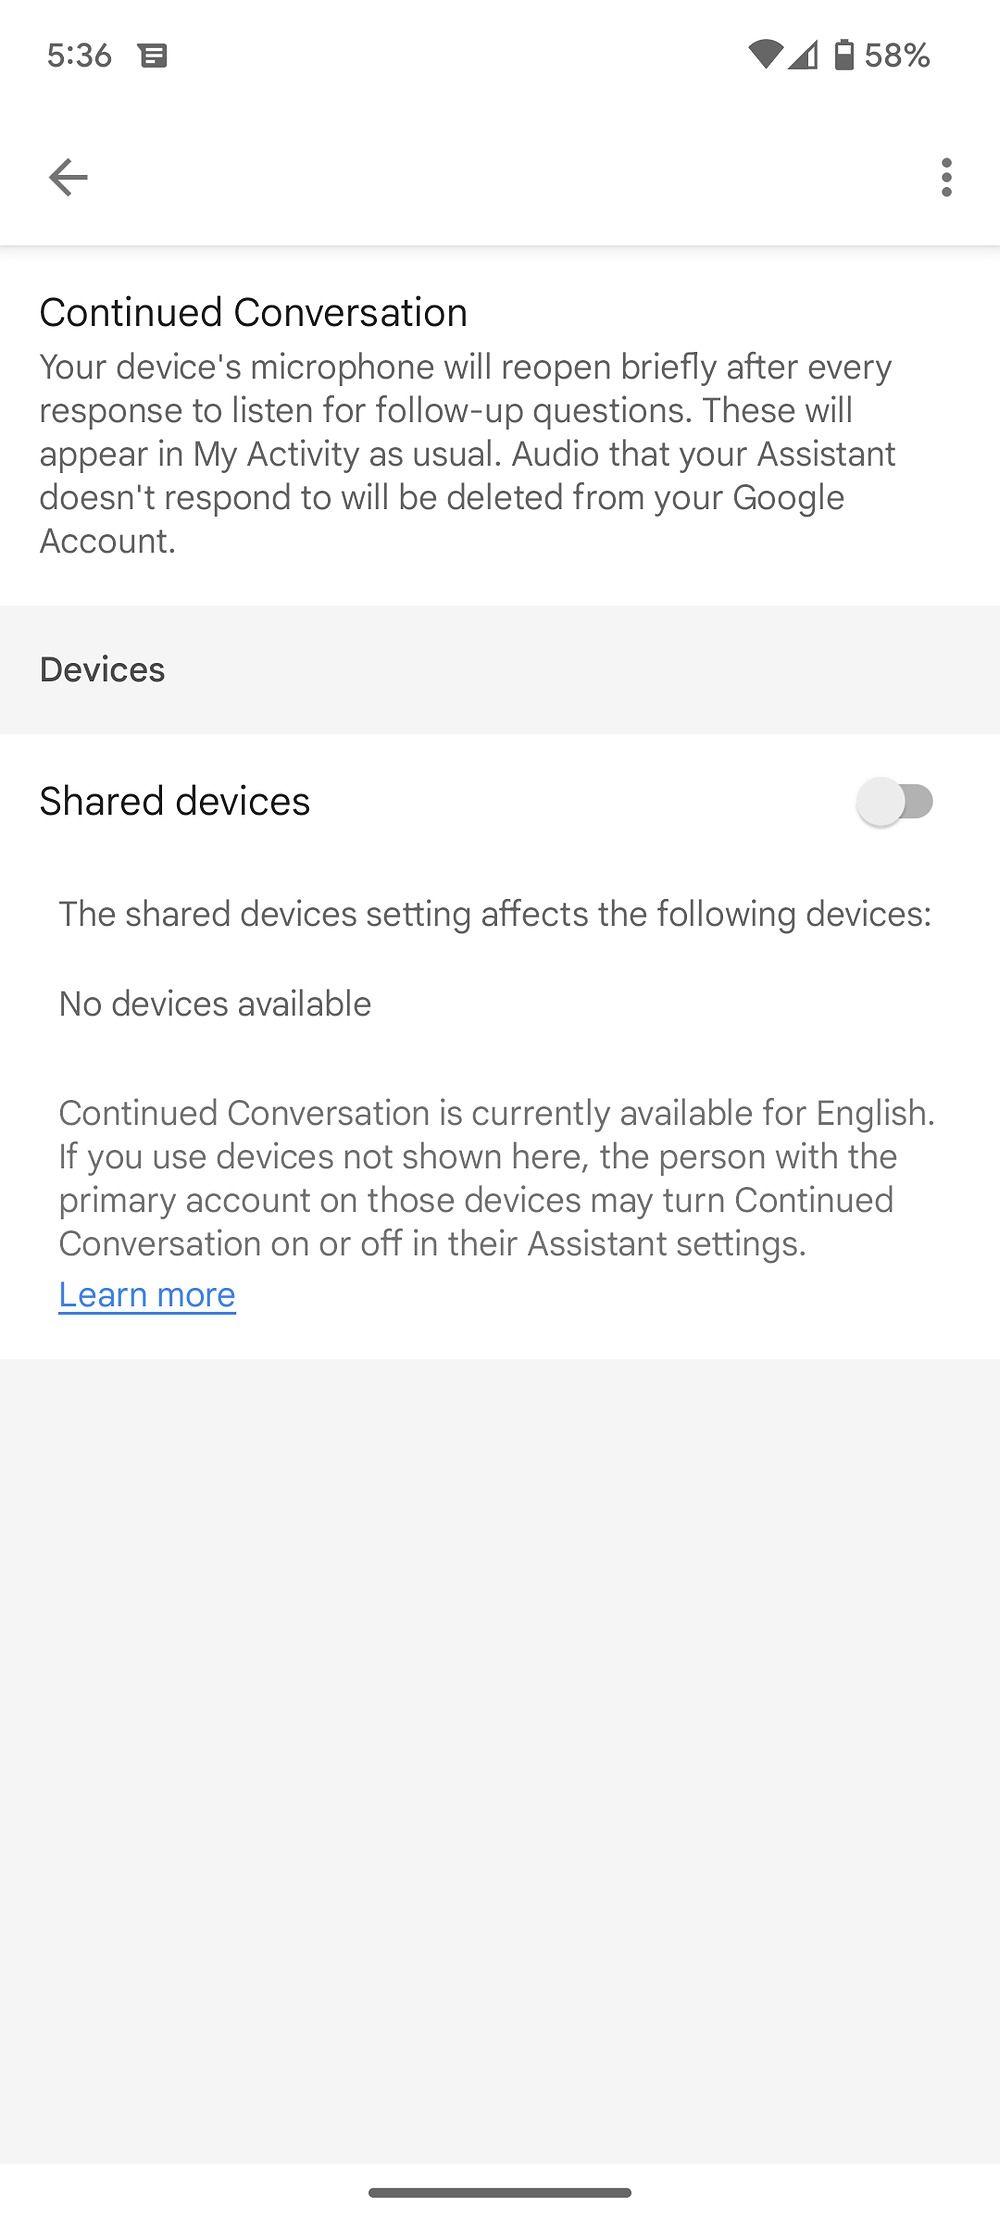 Captura de tela da opção de conversa contínua e dispositivos compartilhados nas configurações do Google Assistant